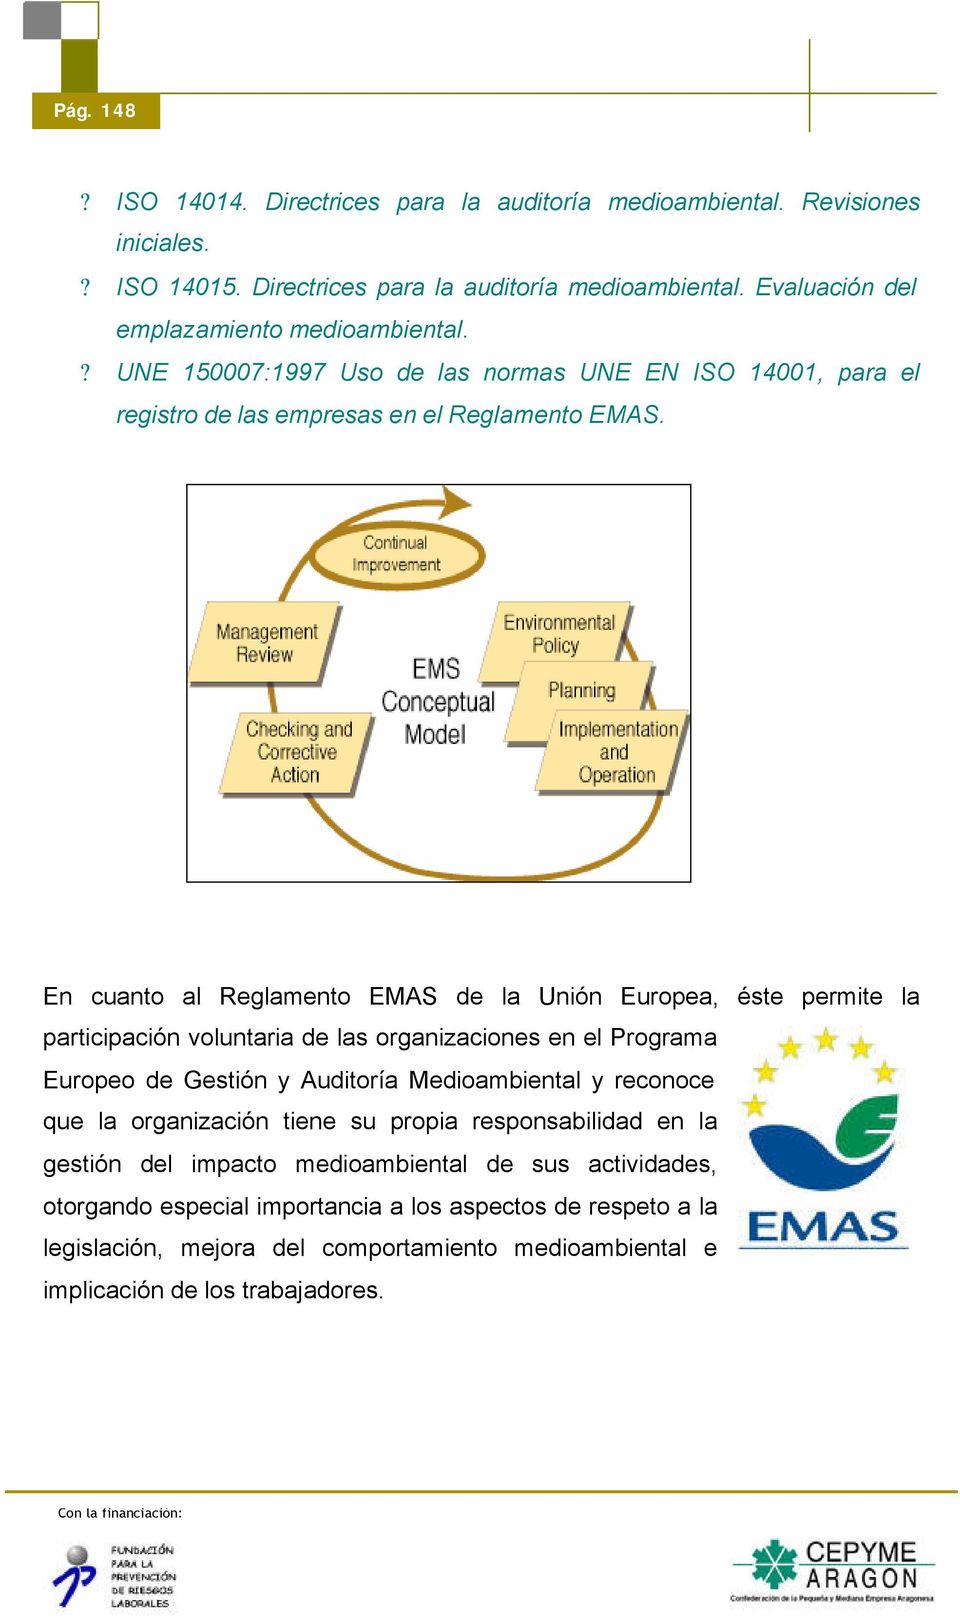 En cuanto al Reglamento EMAS de la Unión Europea, éste permite la participación voluntaria de las organizaciones en el Programa Europeo de Gestión y Auditoría Medioambiental y reconoce